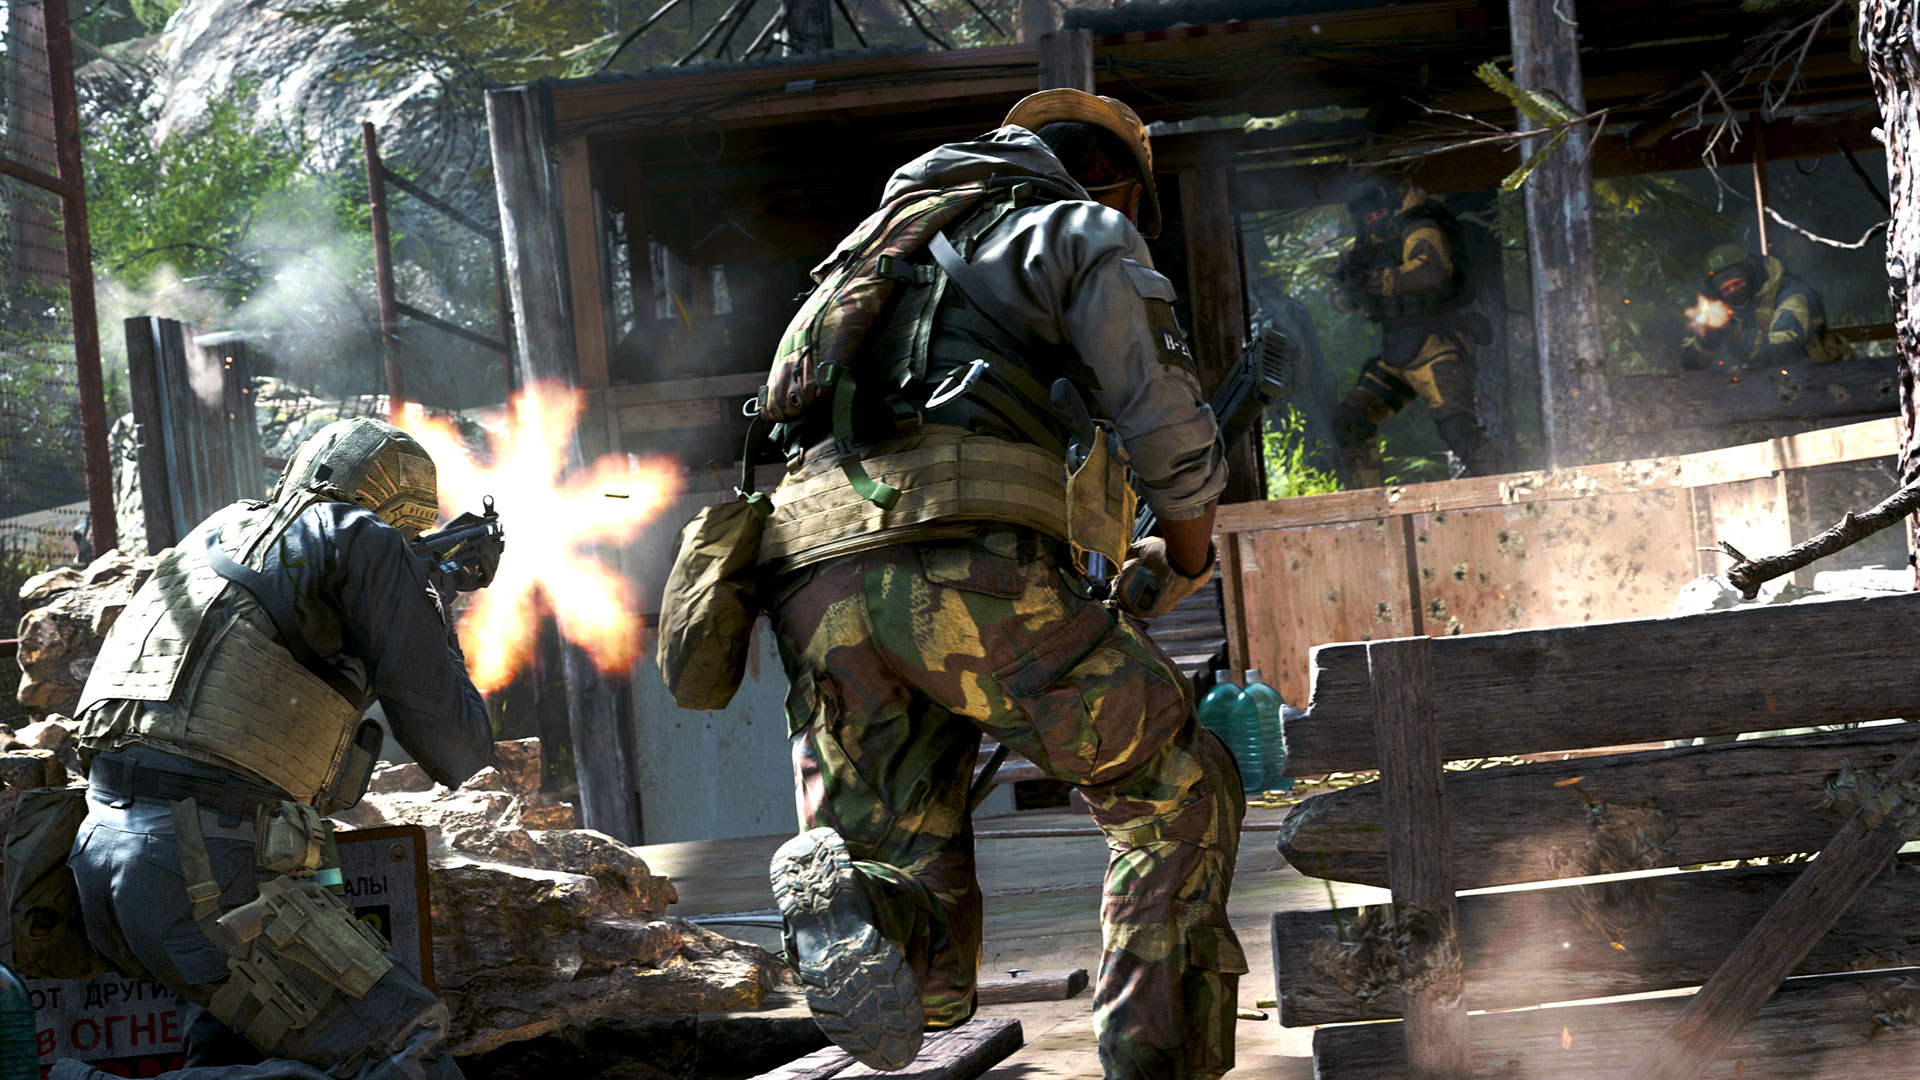 Twrcy nowego Modern Warfare pochwalili si nowym trybem multiplayer, Gunfight